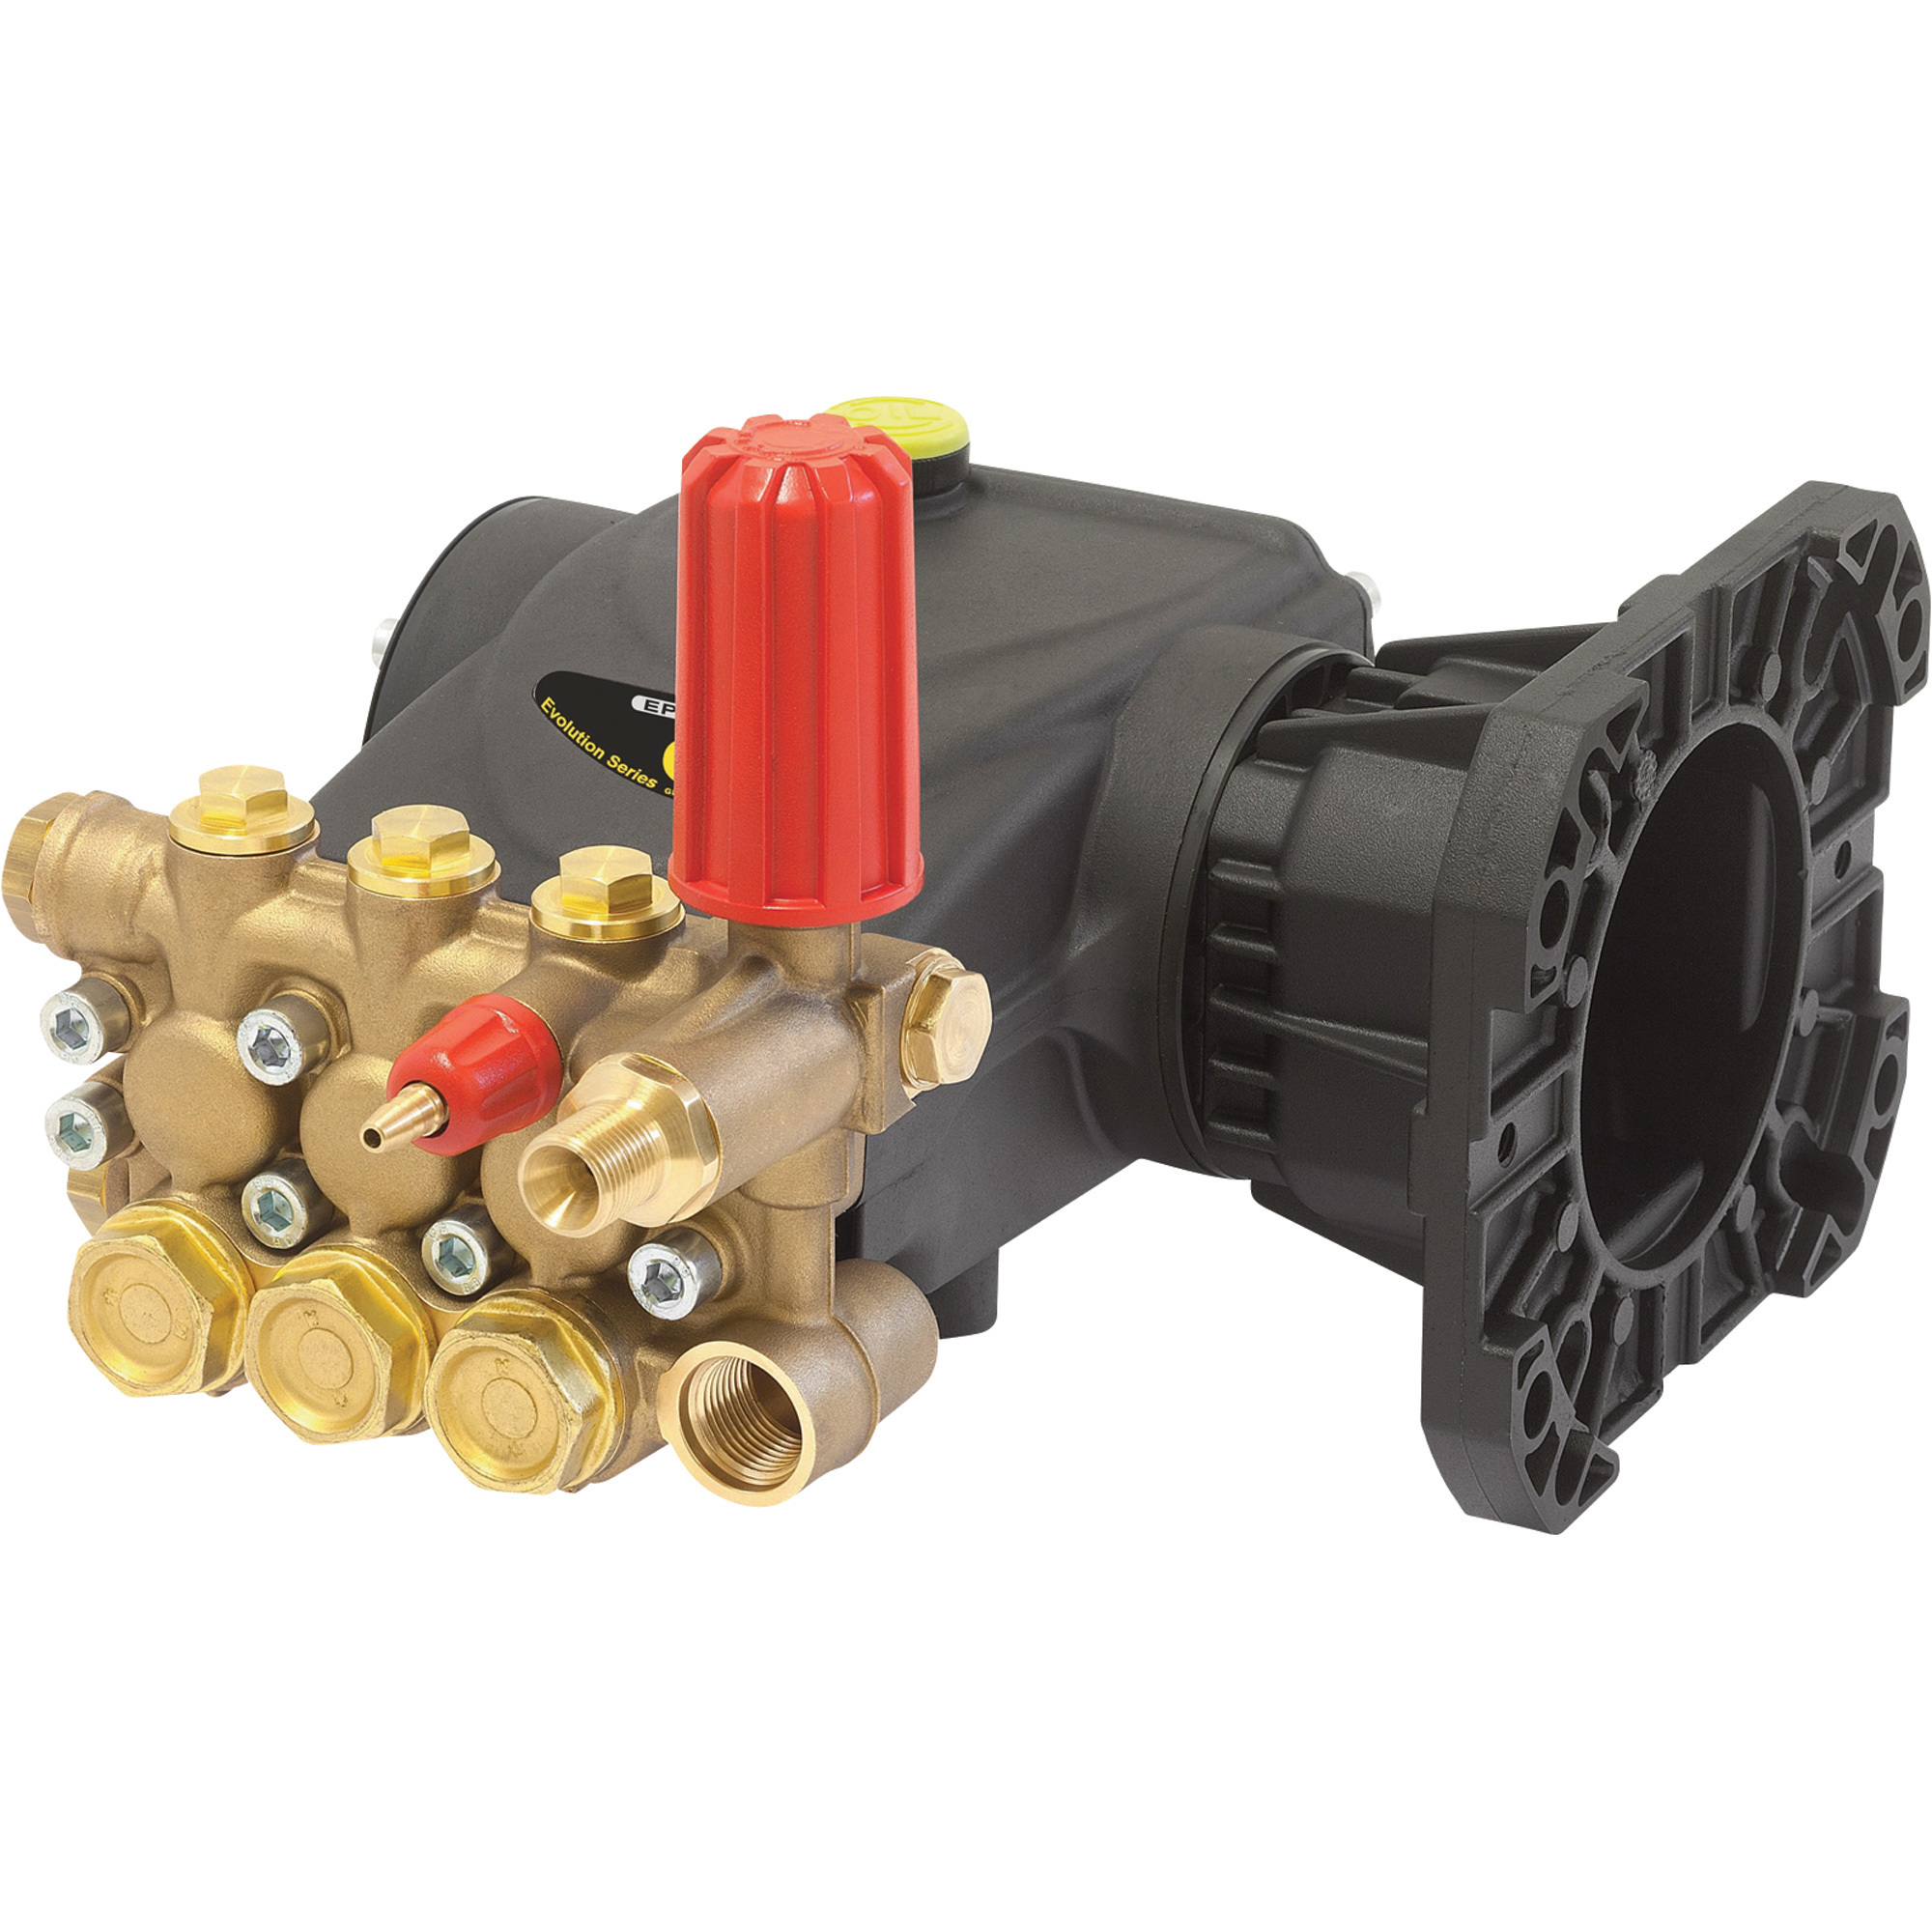 General Pump Triplex Pressure Washer Pump â 4000 PSI, 3.4 GPM, Gas Flange, Direct Drive, Model EP1311G8UI